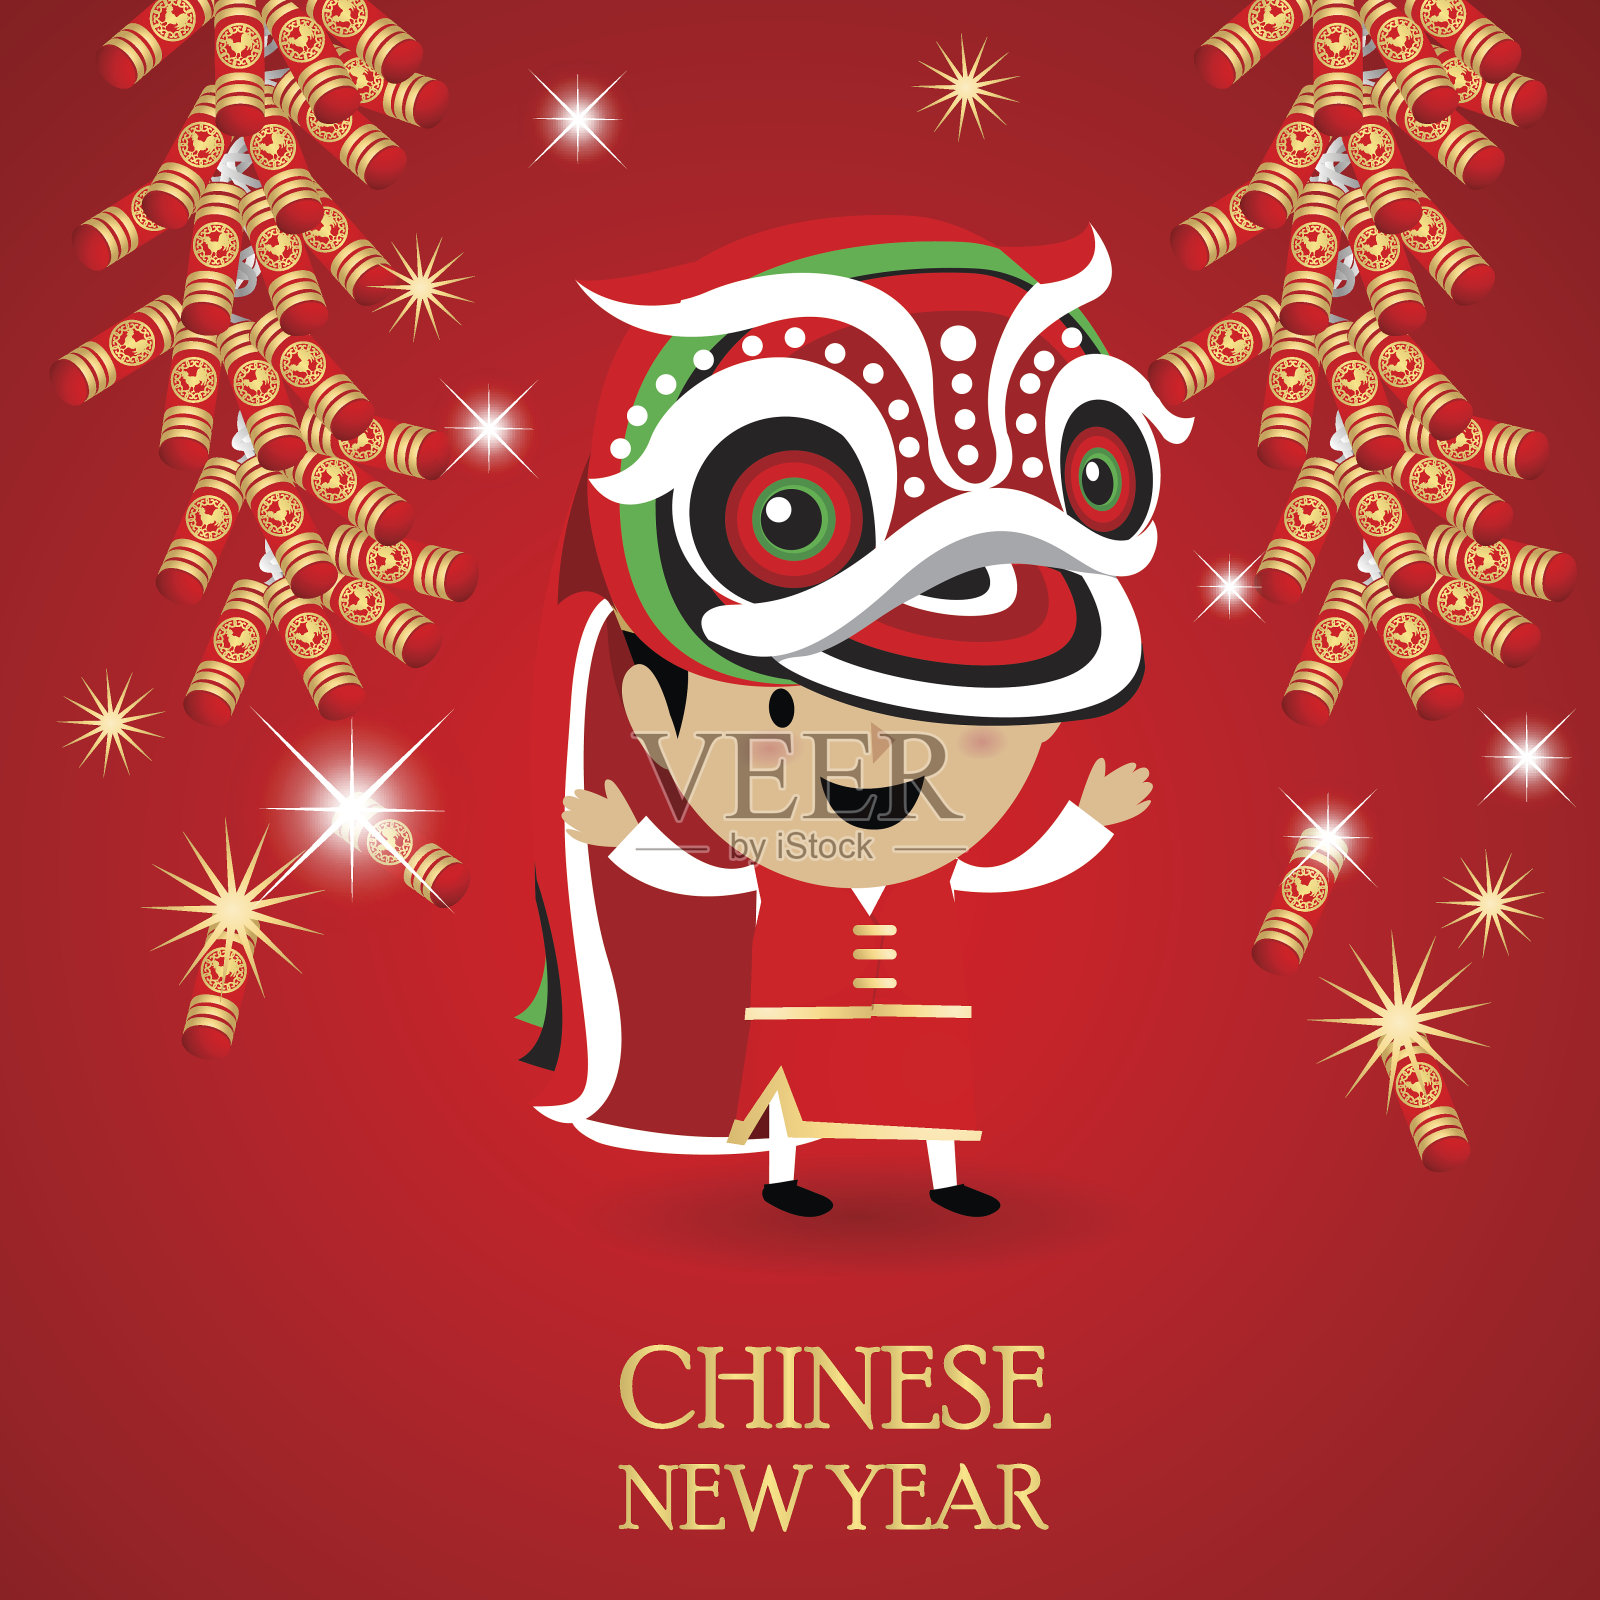 红色背景的中国新年插画图片素材